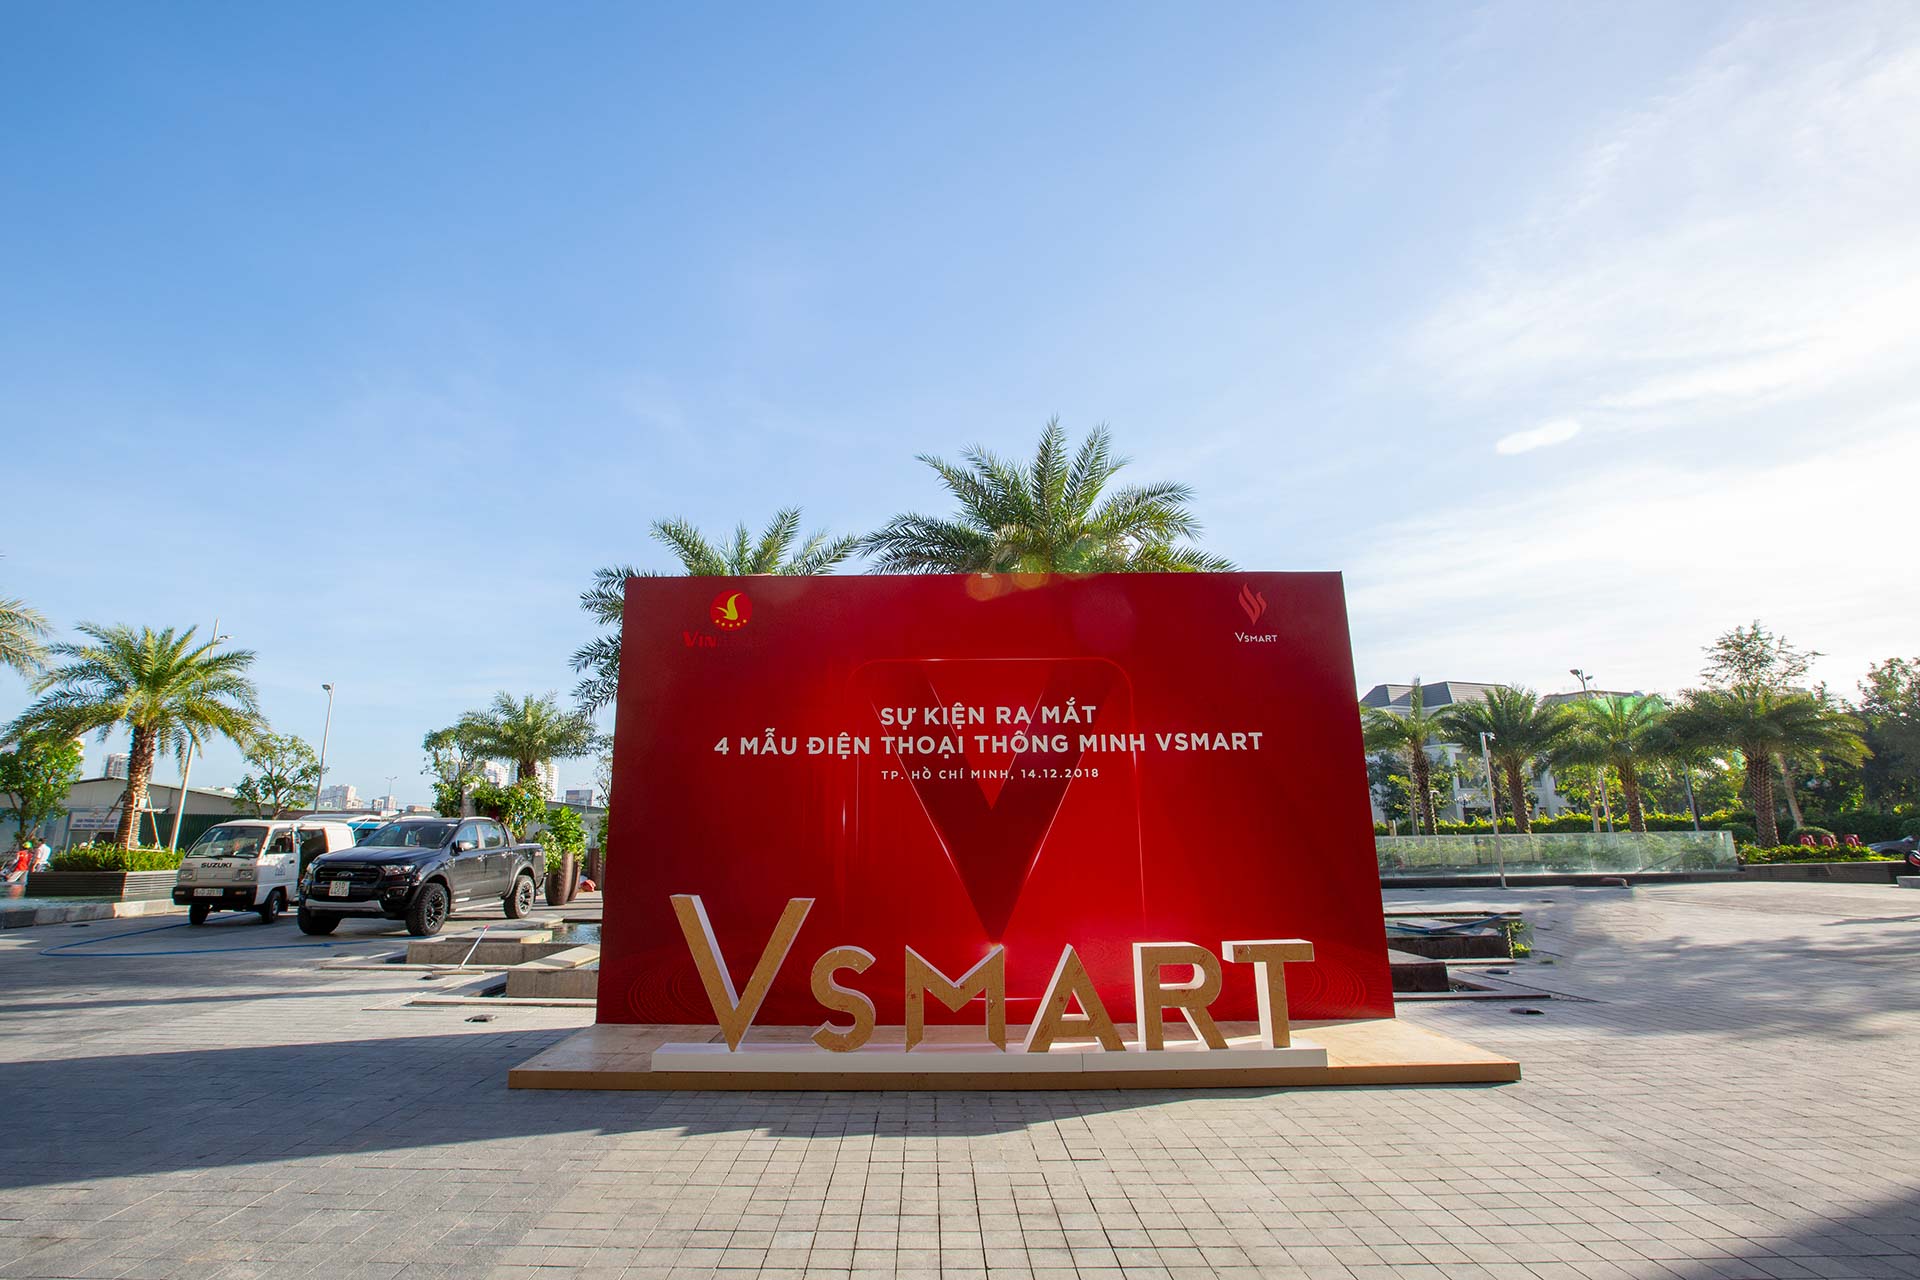 Sự kiện ra mắt 4 mẫu điện thoại thông minh Vsmart đầu tiên sẽ được tổ chức trong khuôn viên tòa nhà cao nhất Việt Nam Landmark 81 – Tp. HCM  từ 16h chiều nay (14/12).